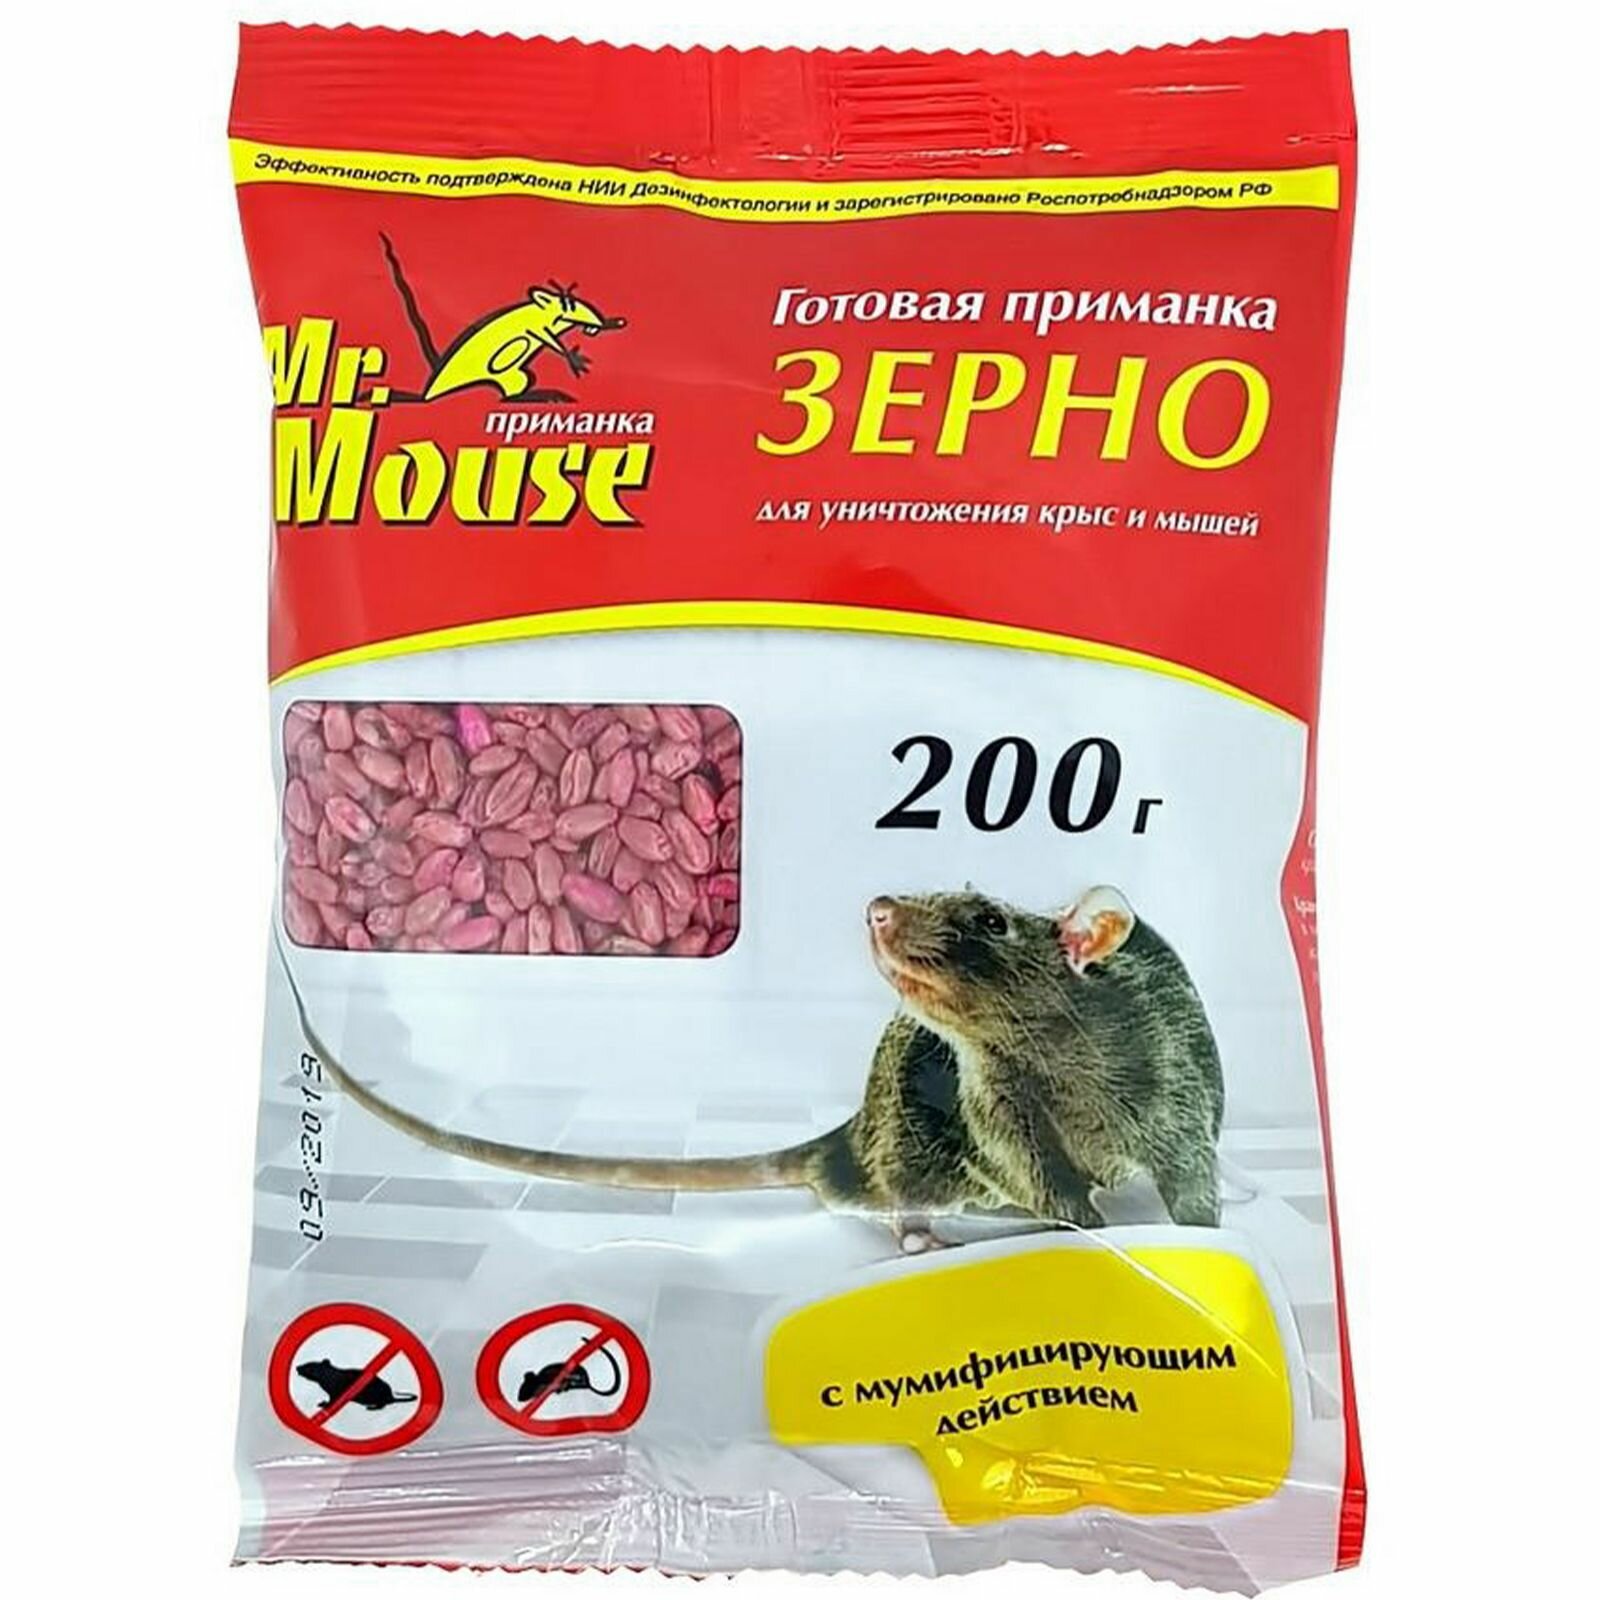 Зерновая приманка от мышей и крыс Mr.Mouse 200гр